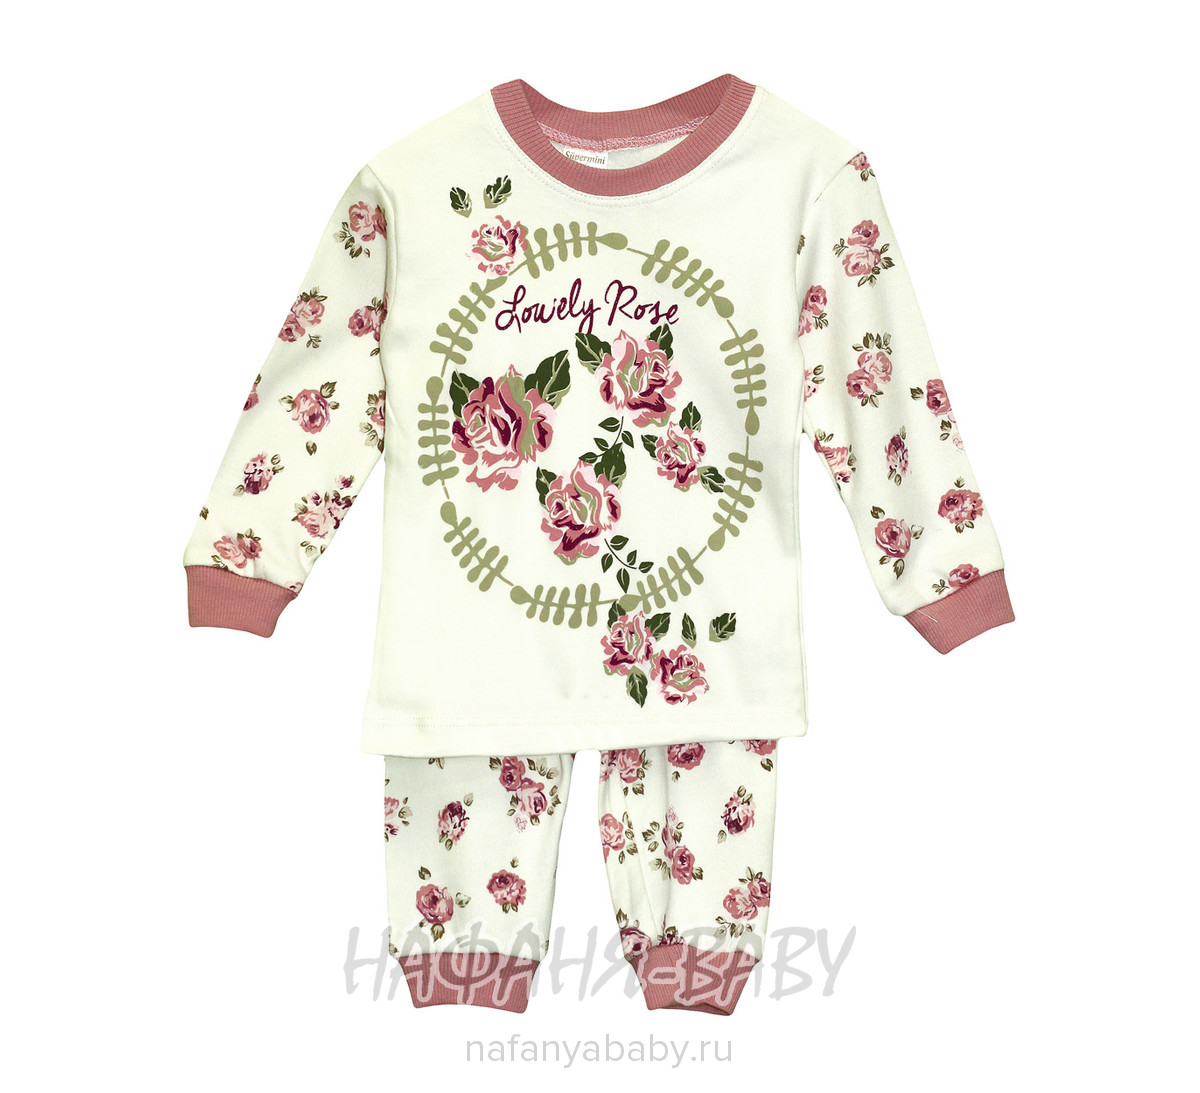 Детская трикотажная пижама для девочки SUPERMINI арт: 55525, 1-4 года, цвет чайная роза, оптом Турция